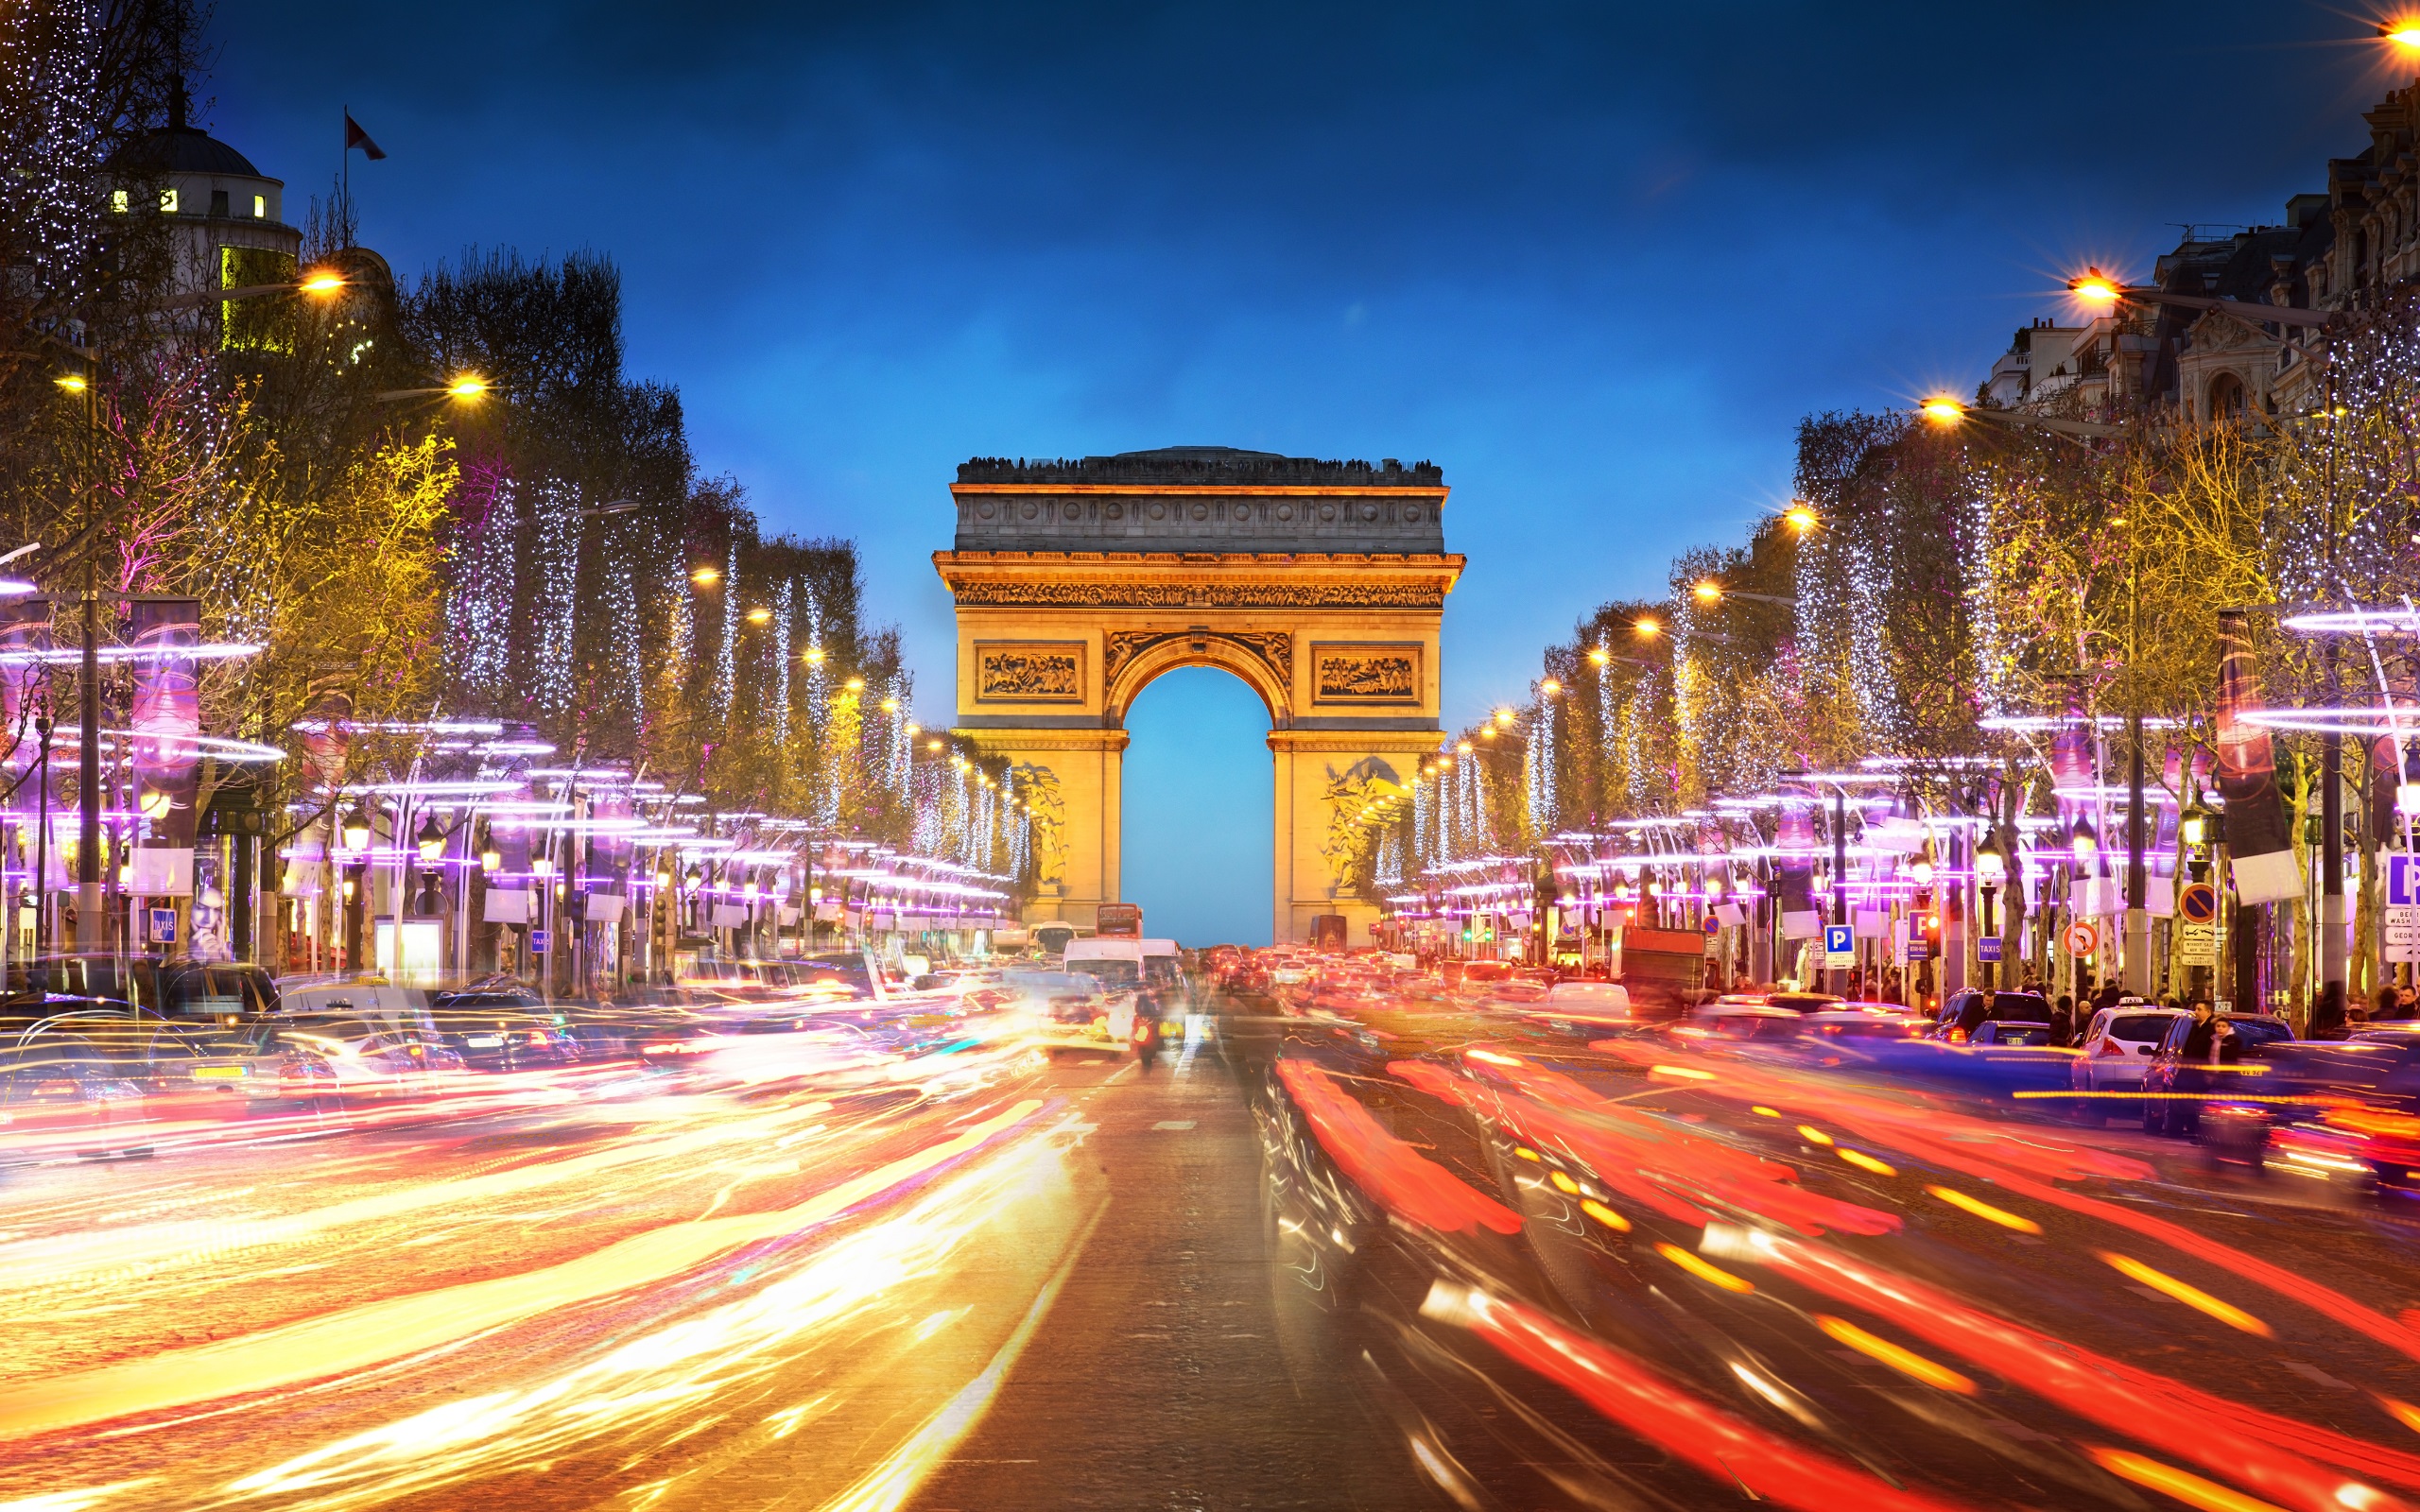 Champs Elysees Paris France Arch Building Colorful Monument Night Light Time Lapse Street Arc De Tri 2560x1600